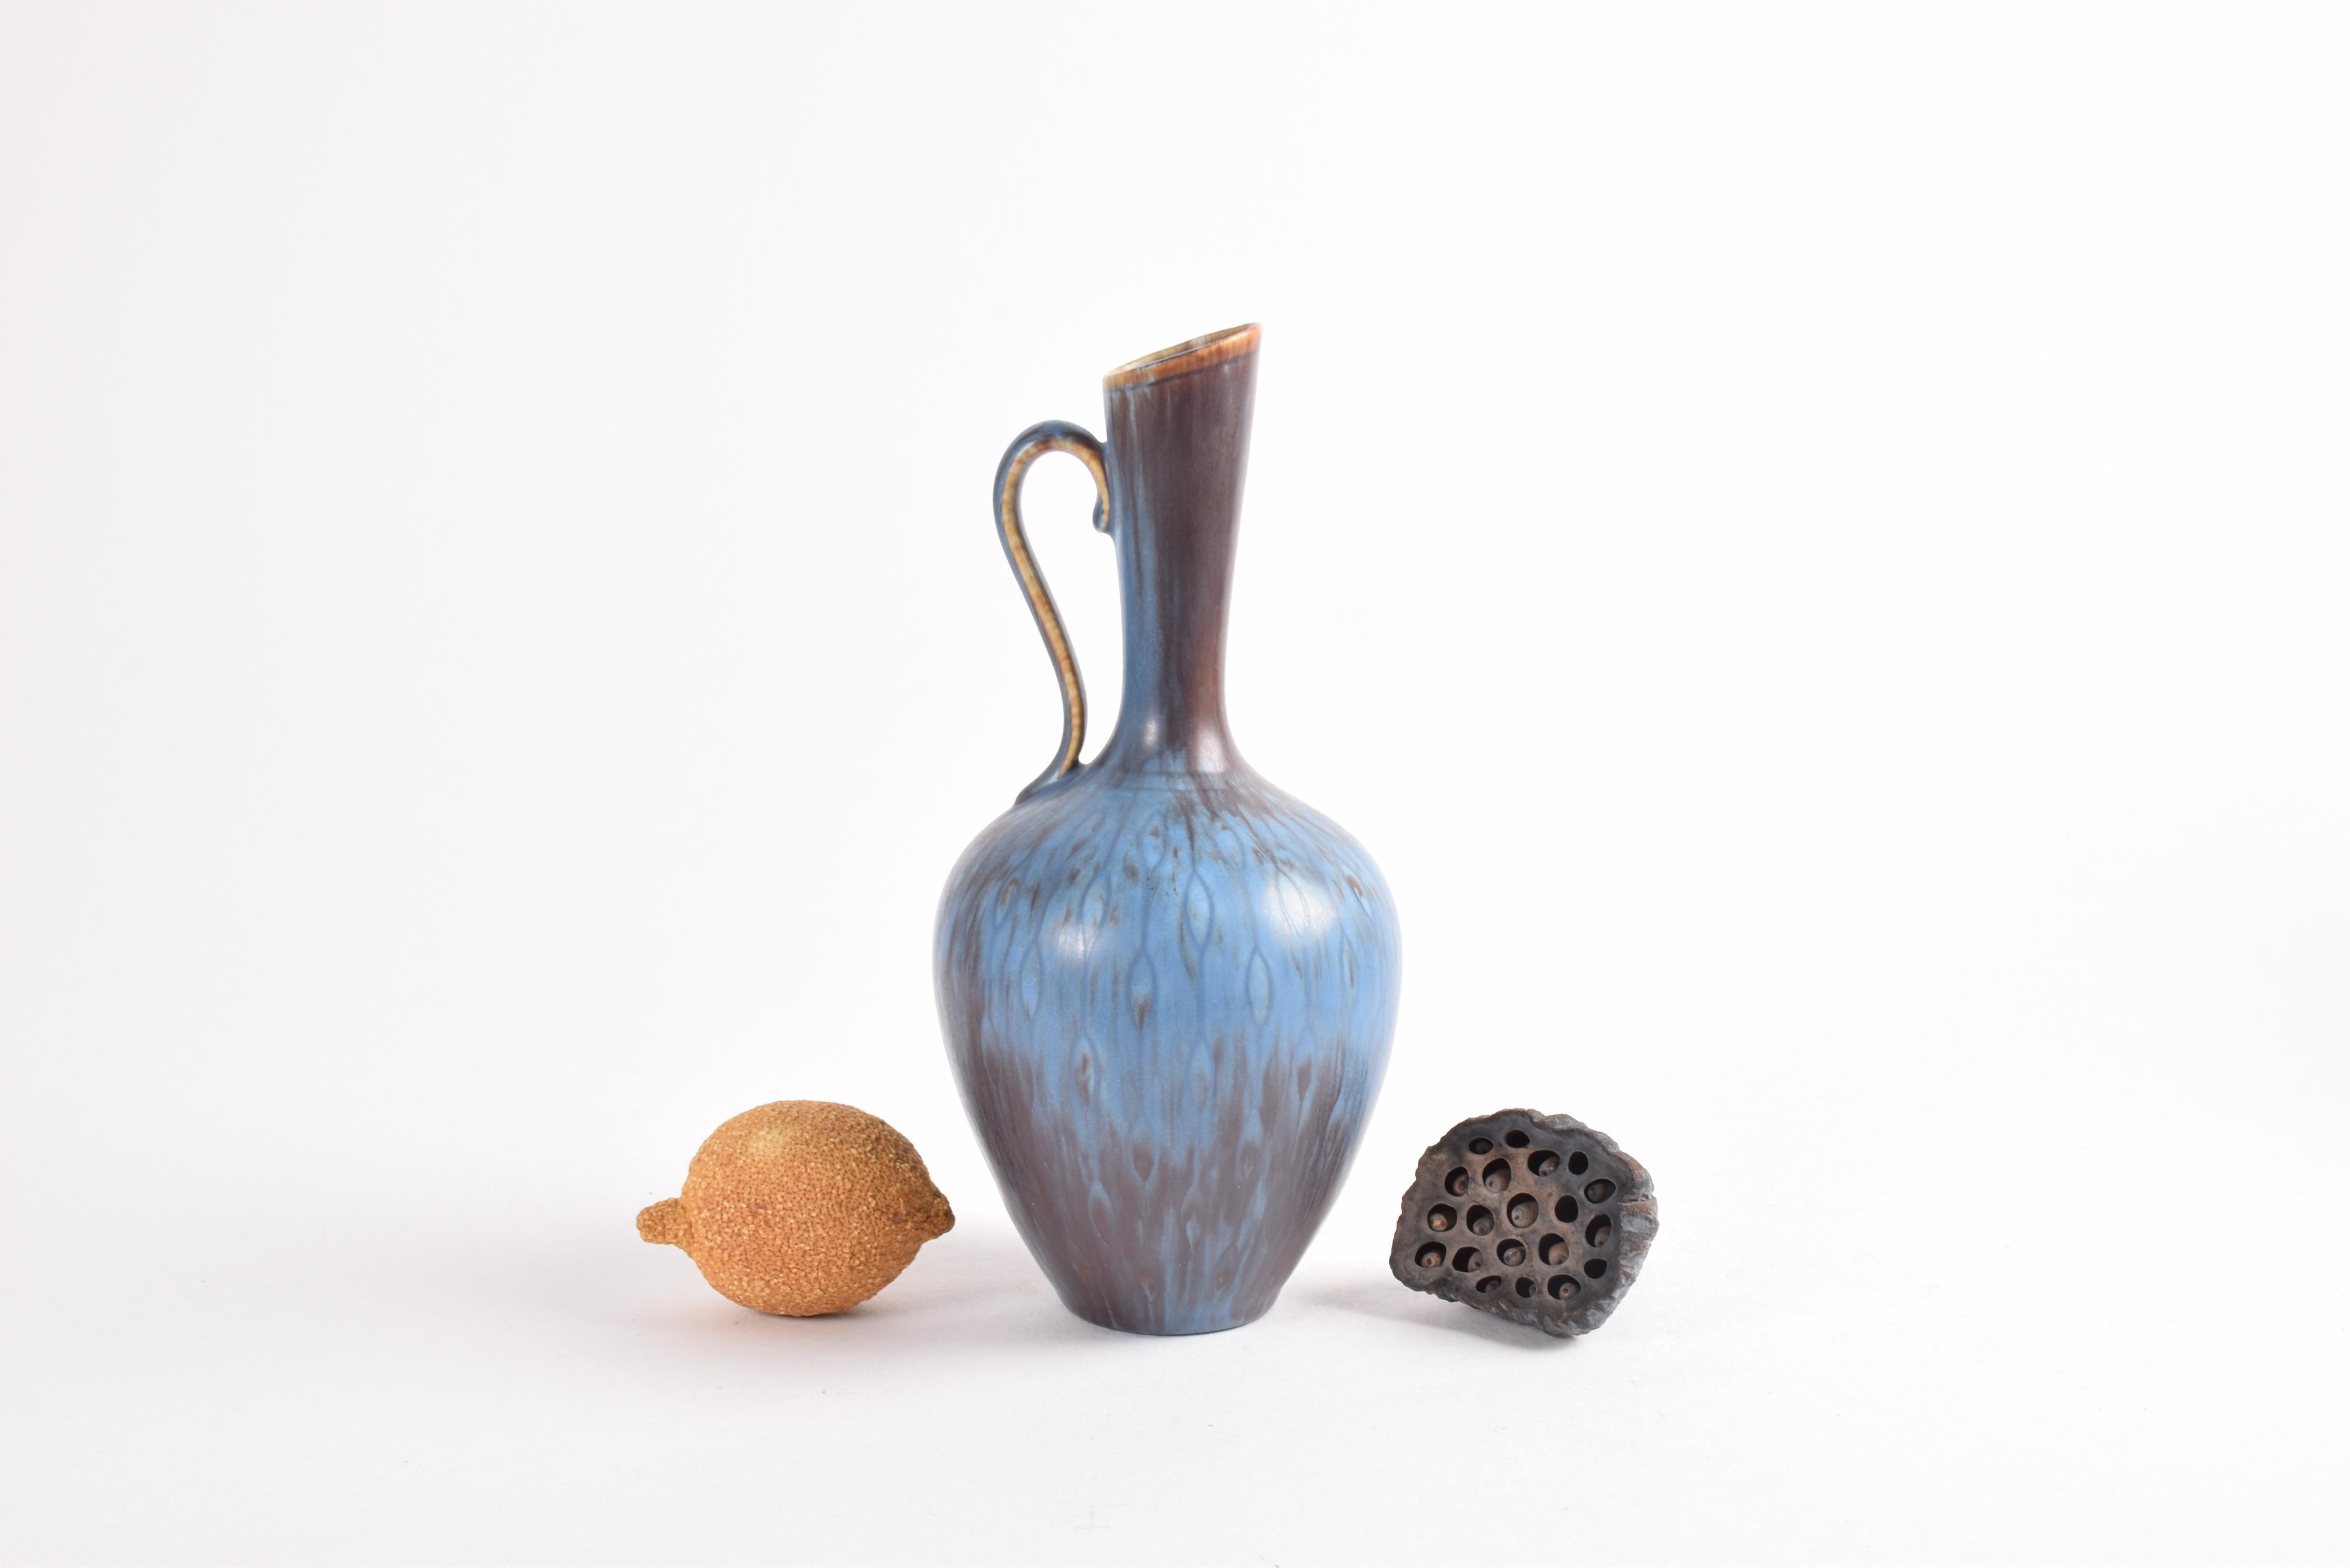 Élégant vase-pichet du designer suédois Gunnar Nylund (1904-97) pour Rörstrand, Suède. Fabriqué entre les années 1950 et 1960.

Le vase est décoré d'une glaçure en bleu et brun/aubergine sur un motif incisé de gouttes de larmes en chaînes.

Le